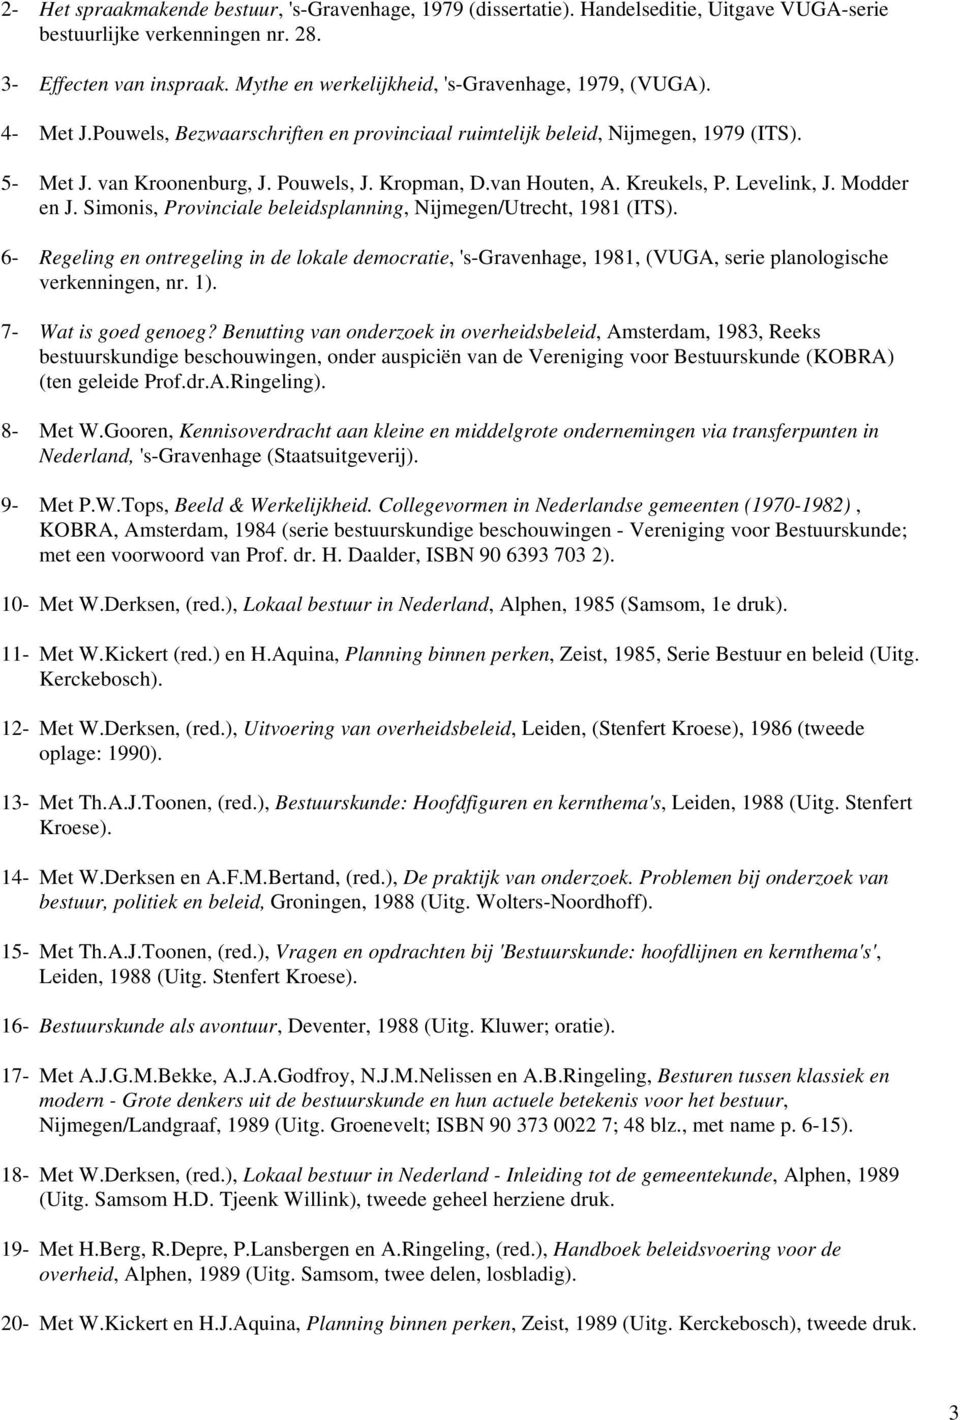 van Houten, A. Kreukels, P. Levelink, J. Modder en J. Simonis, Provinciale beleidsplanning, Nijmegen/Utrecht, 1981 (ITS).